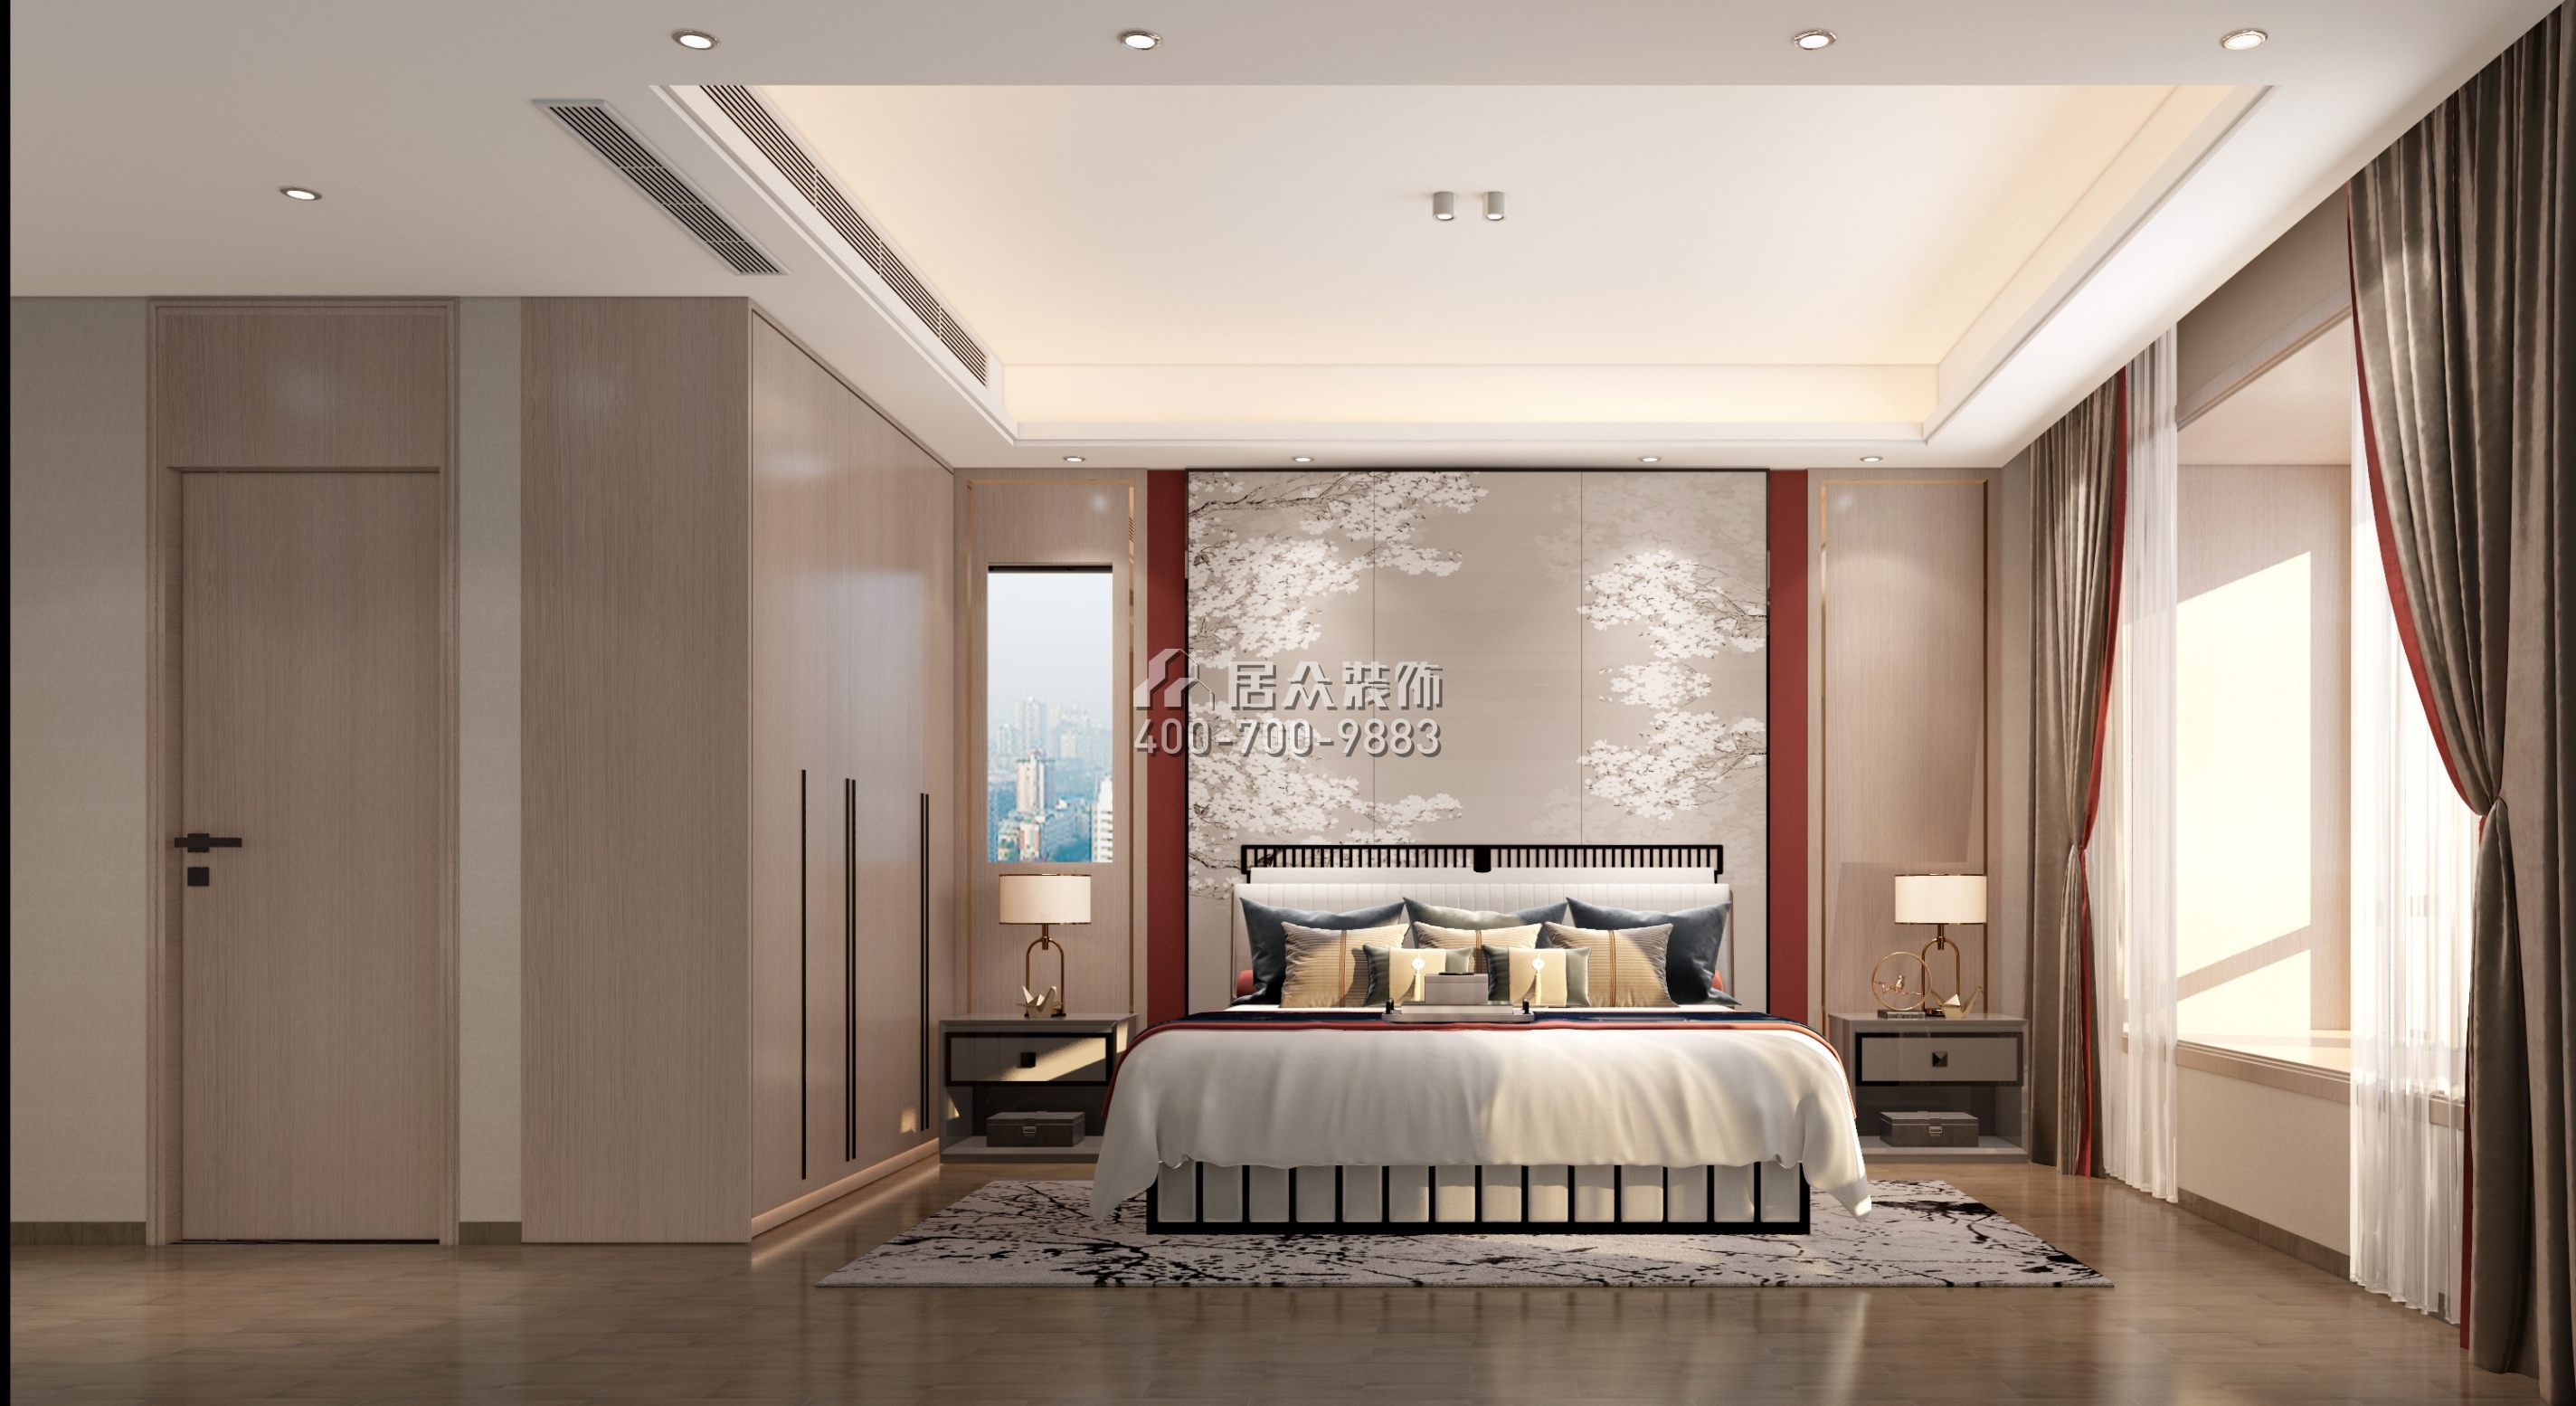 万科金域华府189平方米中式风格平层户型卧室装修效果图